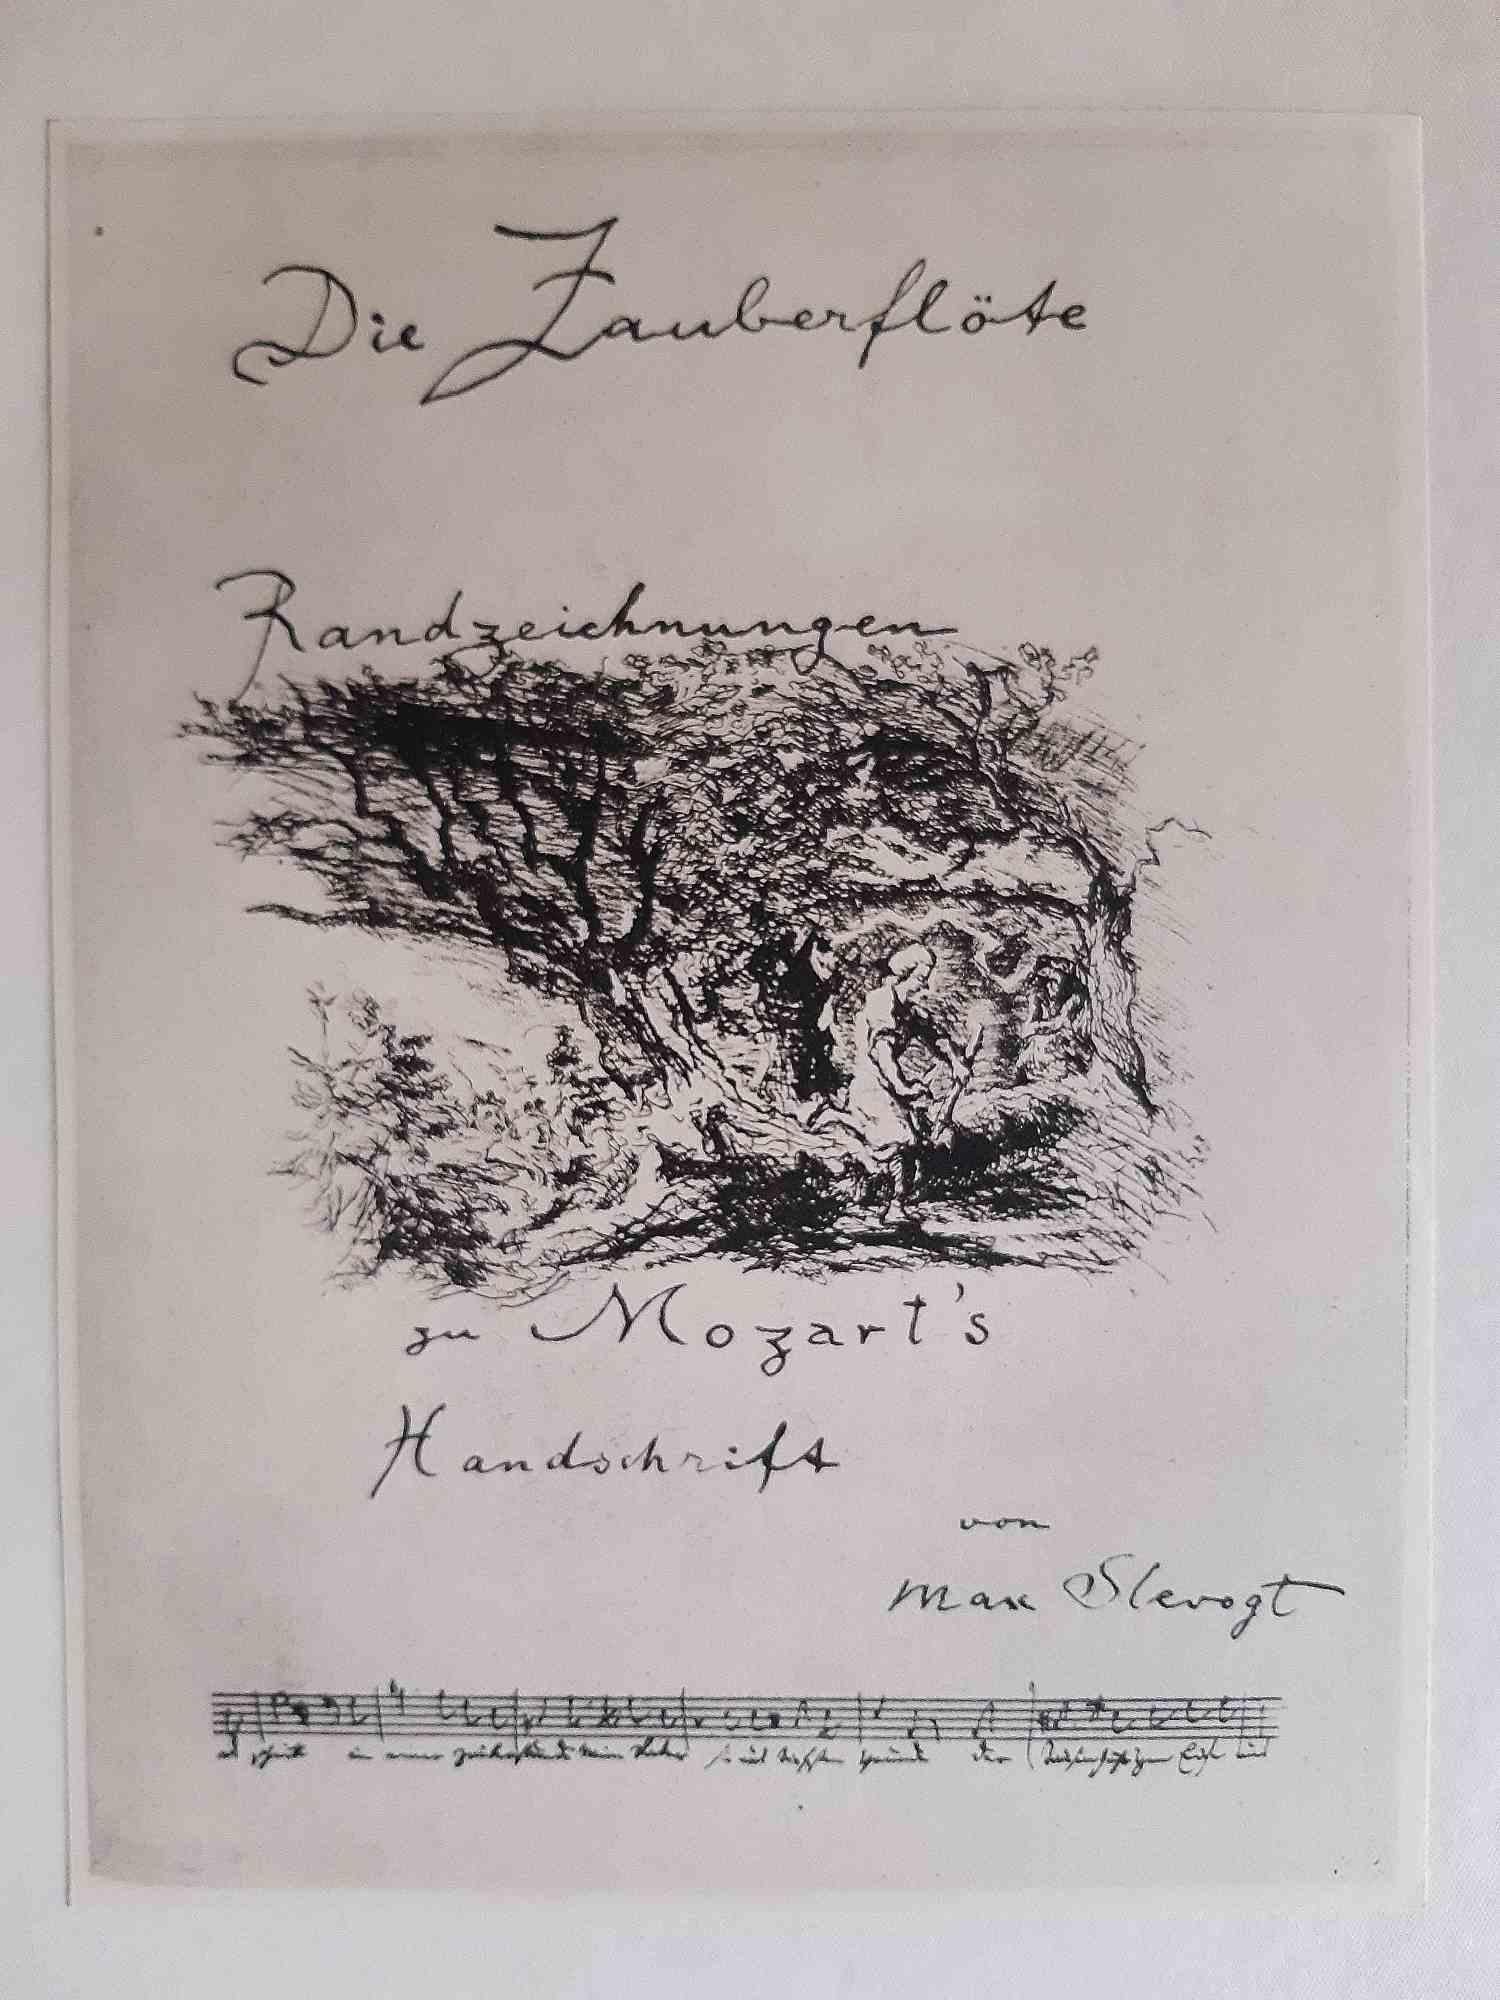 Die Zauberflote ist ein seltenes Originalbuch, das von Wolfgang Amadeus Mozart geschrieben und von Max Slevogt (Landshut, 8. Oktober 1868 - Leinsweiler, 20. September 1932) im Jahr 1924 illustriert wurde.

Erste populäre